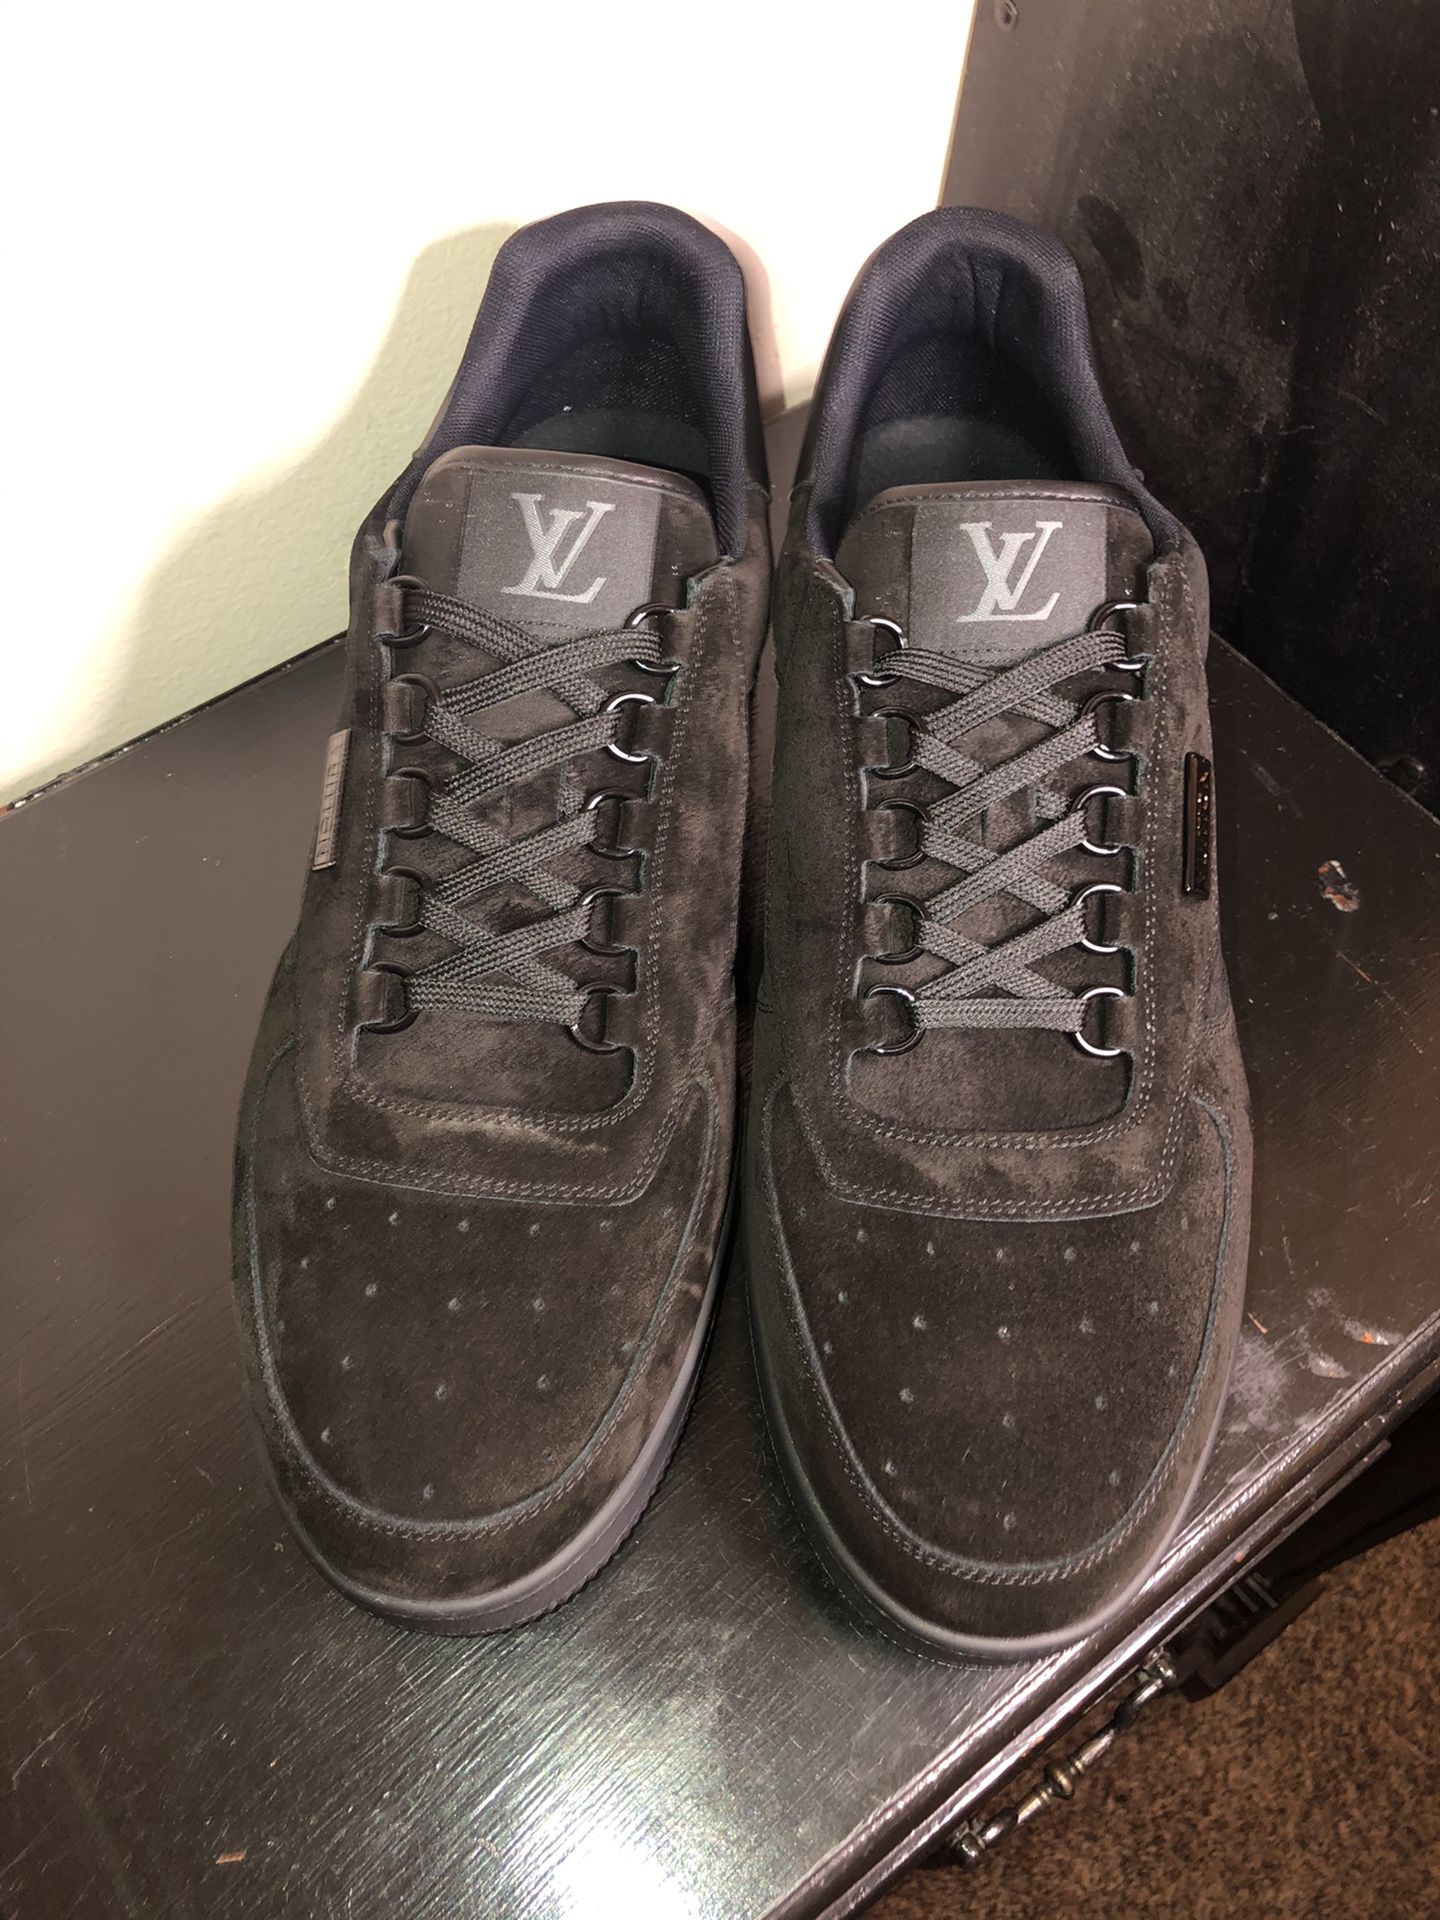 Authentic Black suede Louis Vuitton Sneakers (Men’s)